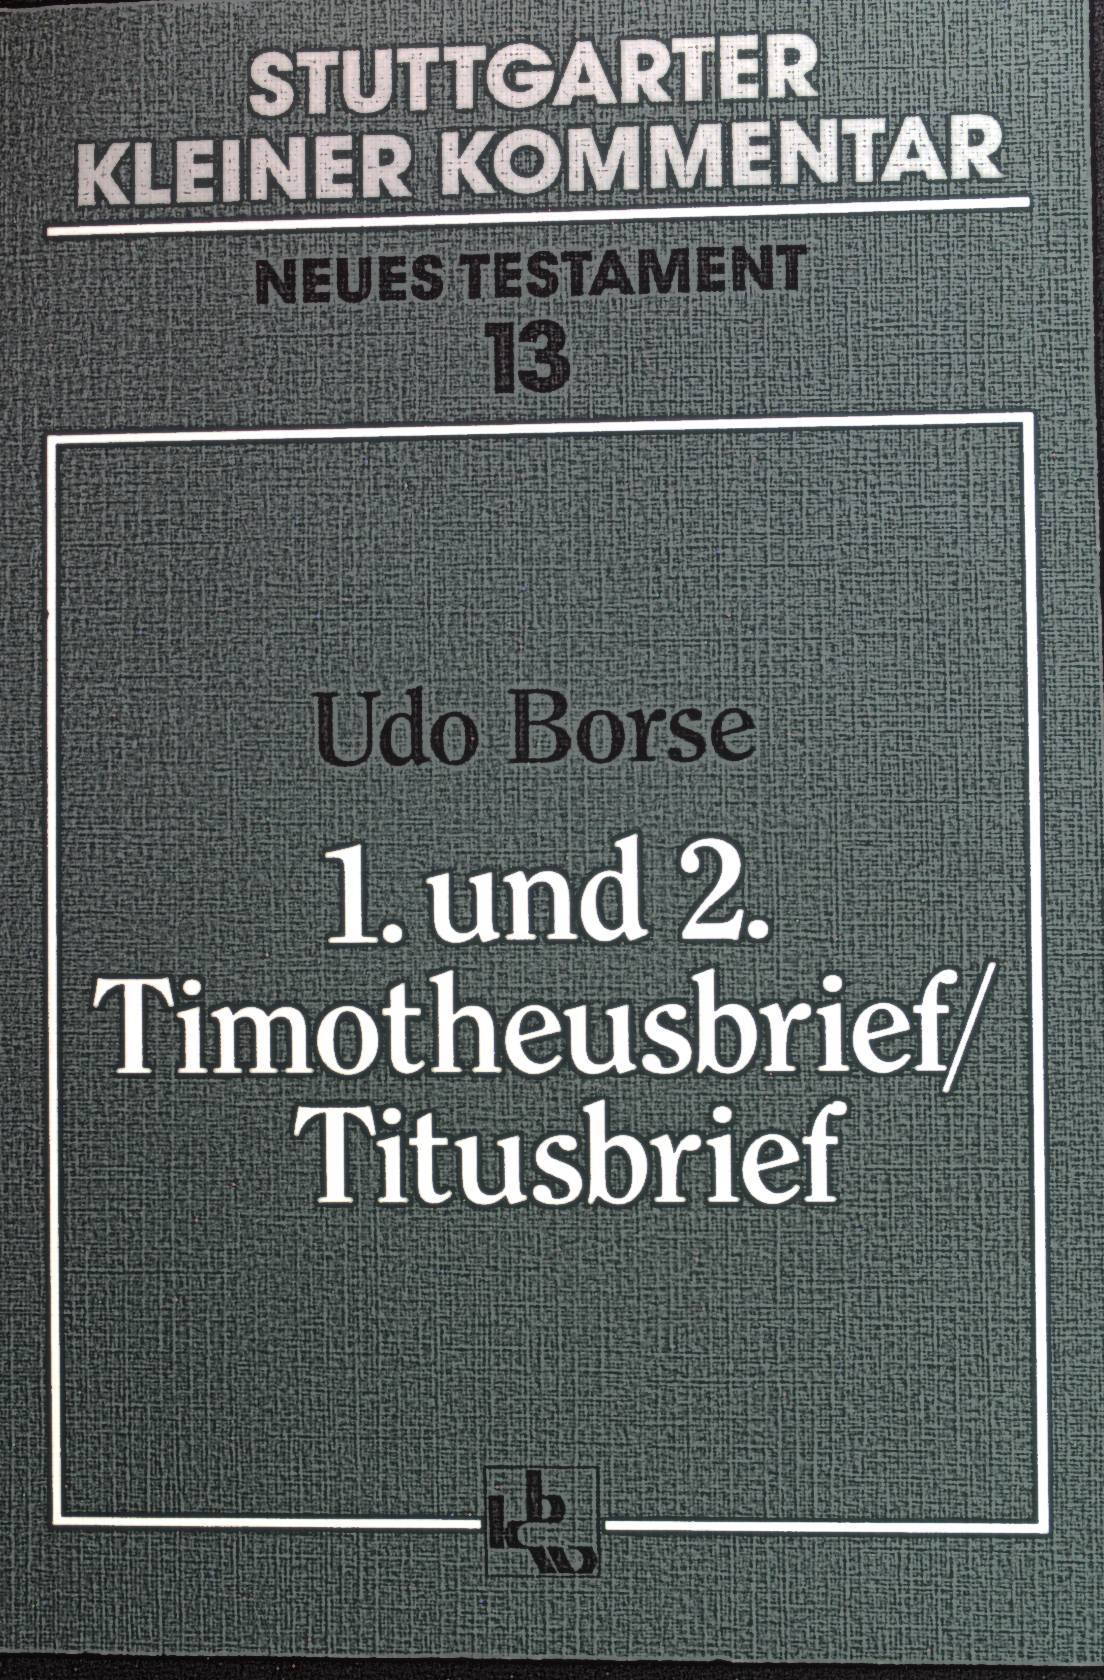 1. und 2. Timotheusbrief, Titusbrief. Stuttgarter kleiner Kommentar / Neues Testament ; 13. - Borse, Udo